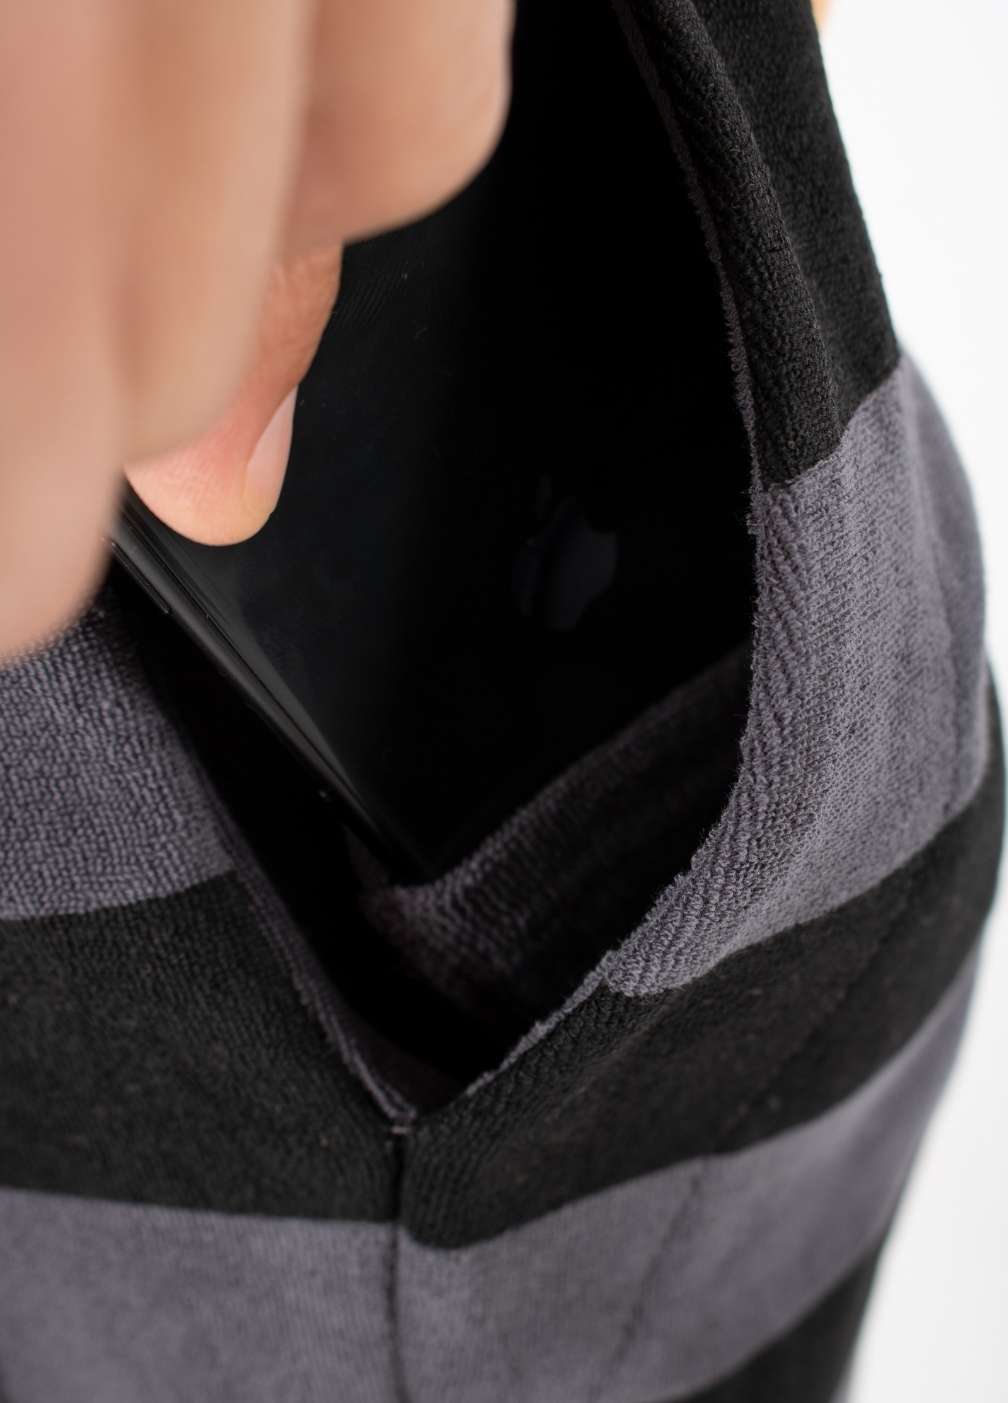 EBONY TOWEL SHORTS ST closeup - phone pocket - men's shorts with hidden pocket for smartphones